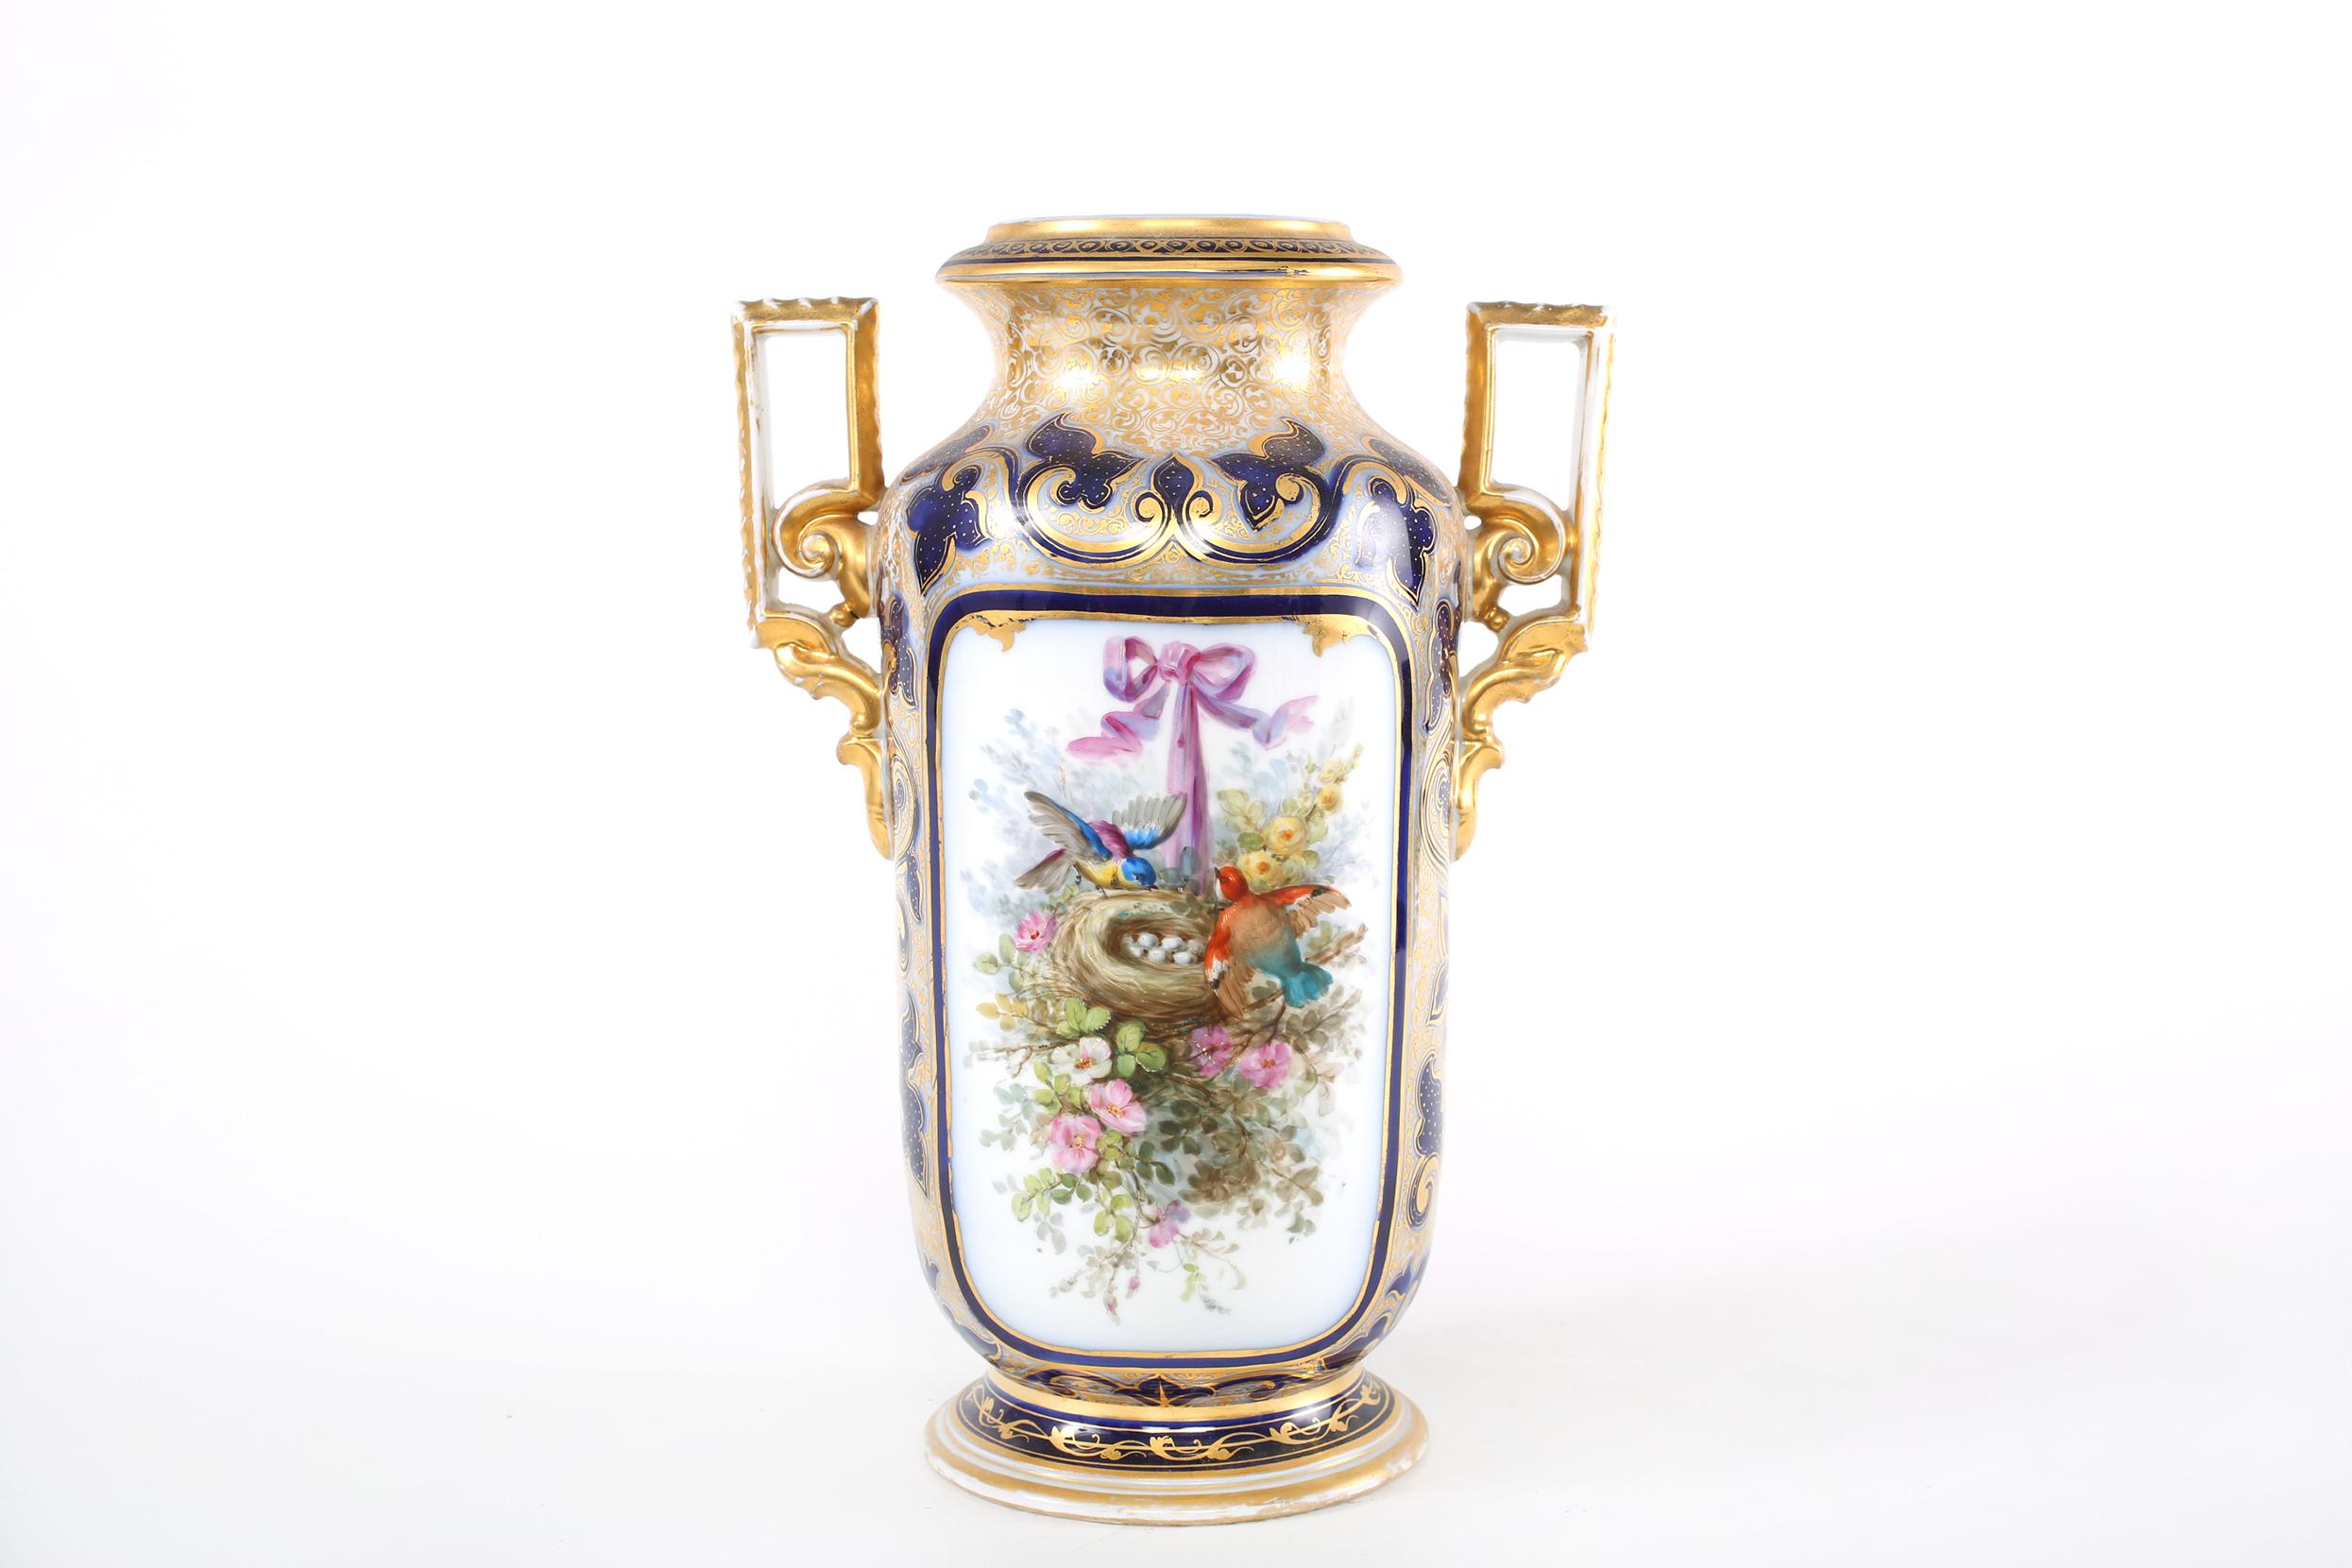 Mitte des 19. Jahrhunderts Französisch Porzellan dekorative Vase / Stück mit äußeren vergoldeten Szene Design Details und seitlichen Griffen gemalt. Die Vase / Stück ist in gutem Zustand mit entsprechenden Verschleiß im Einklang mit Alter /